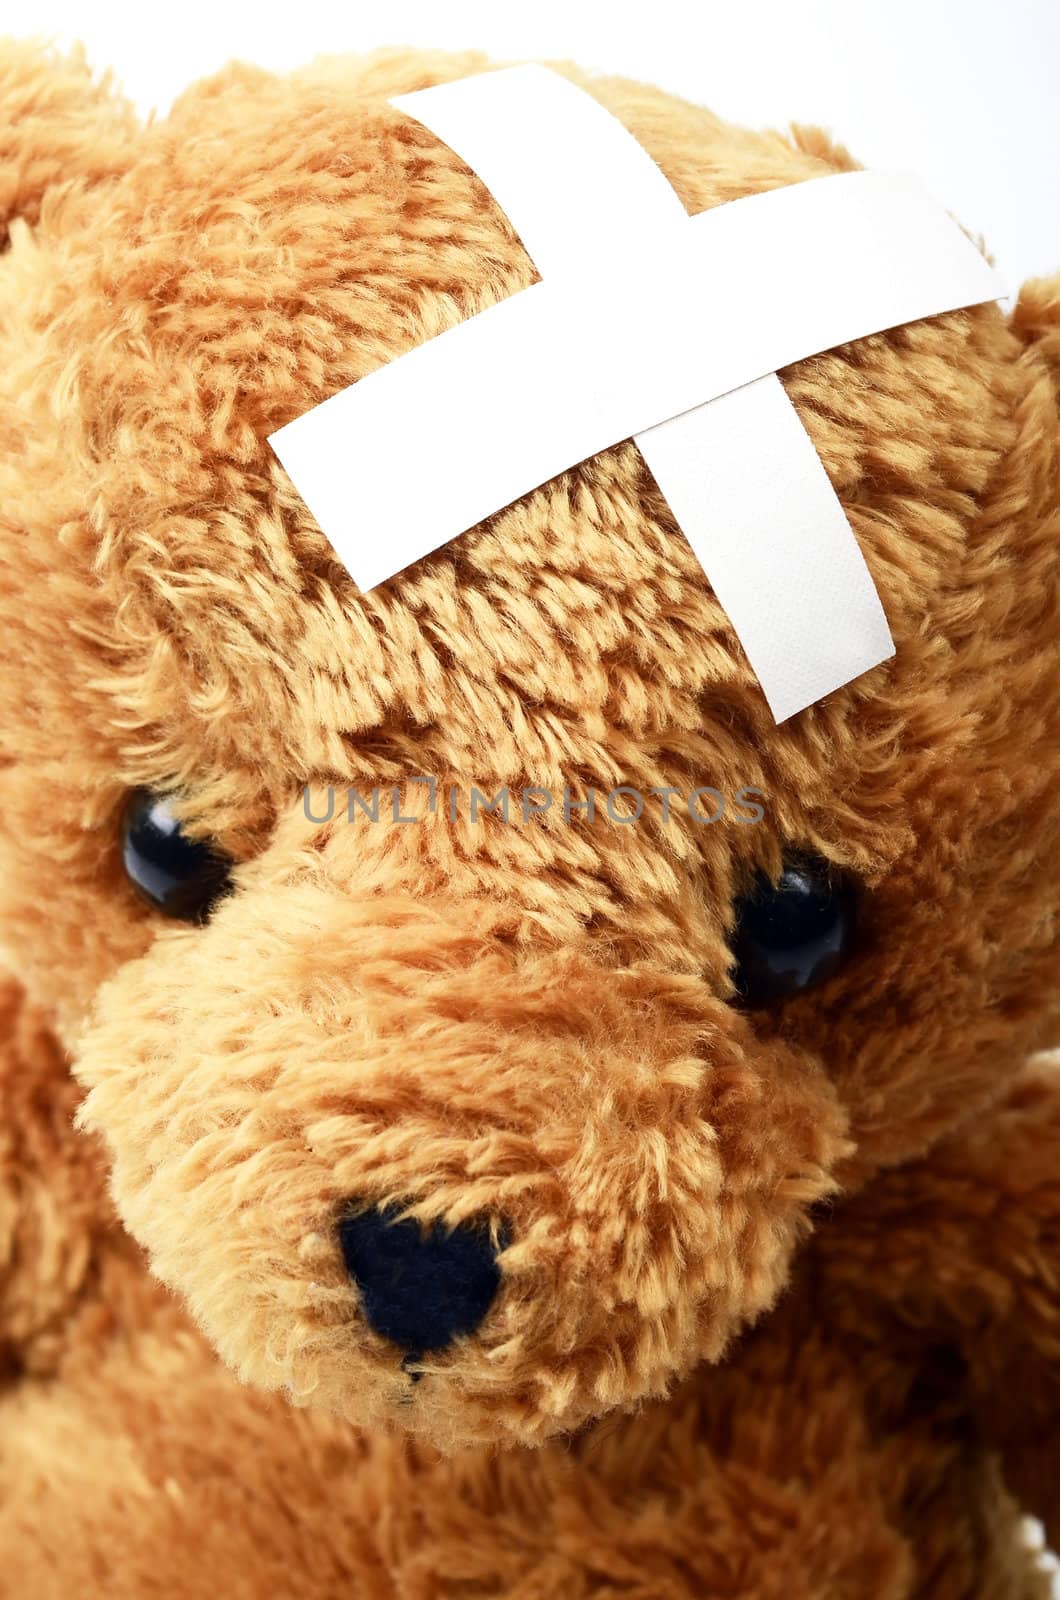 Teddy bear with a bandage by ljusnan69